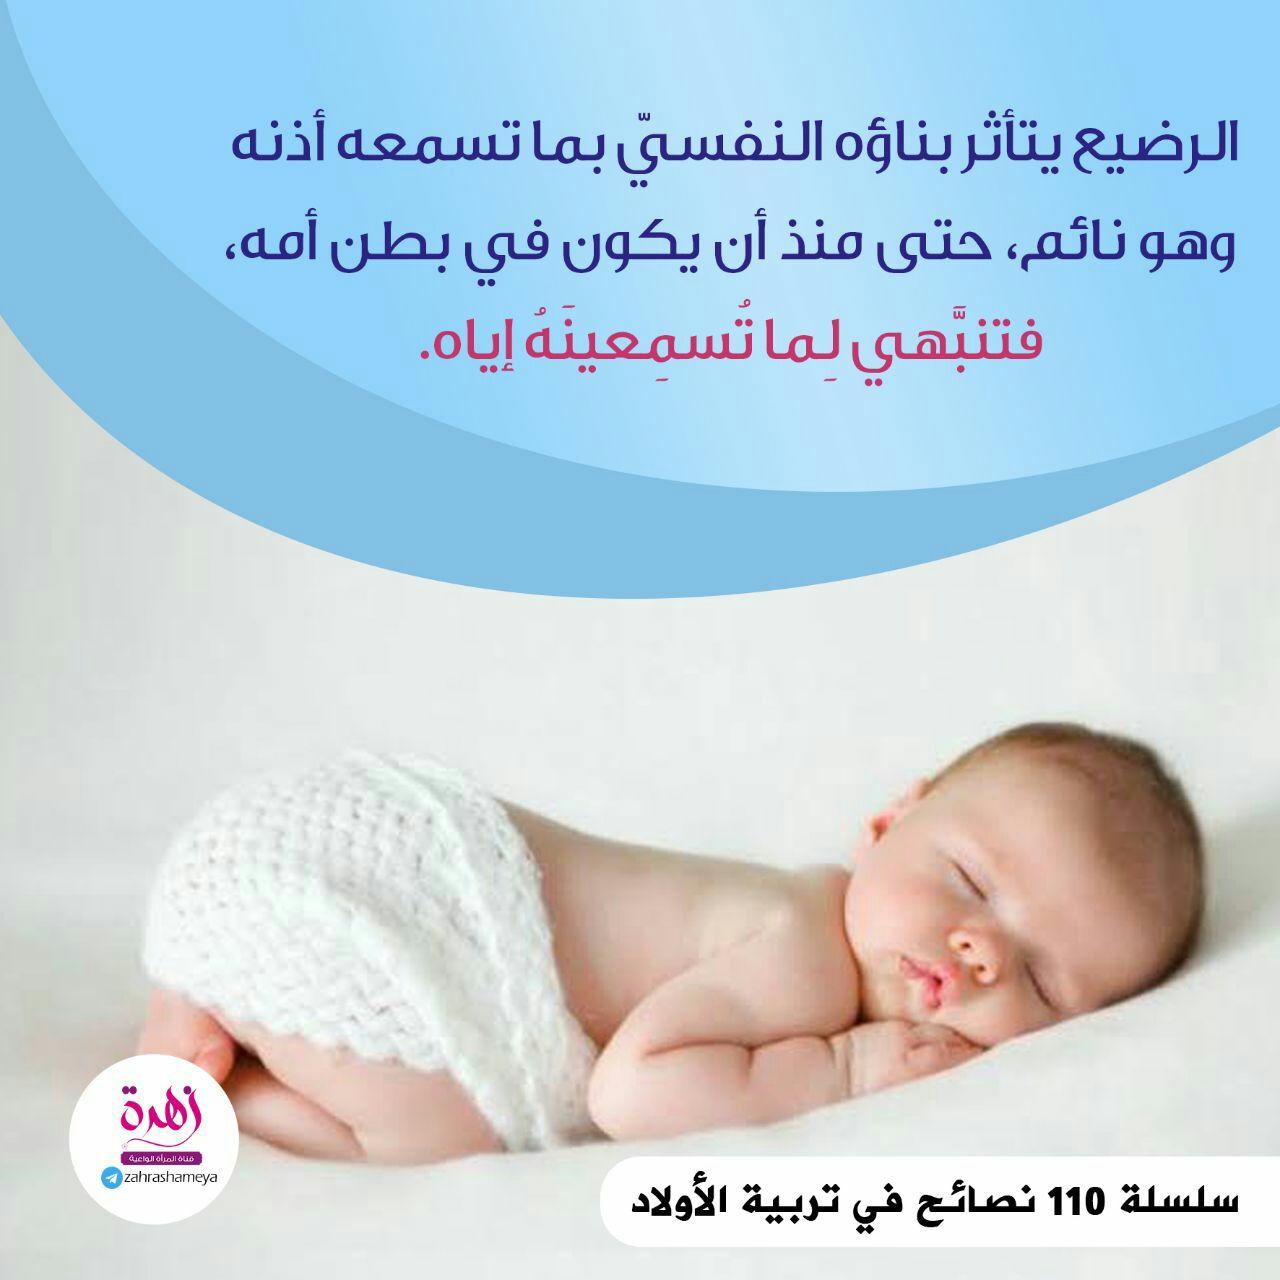 نصائح في تربية الأولاد - الرضيع يتأثر بناؤه النفسي بما تسمعه أذنه وهو نائم